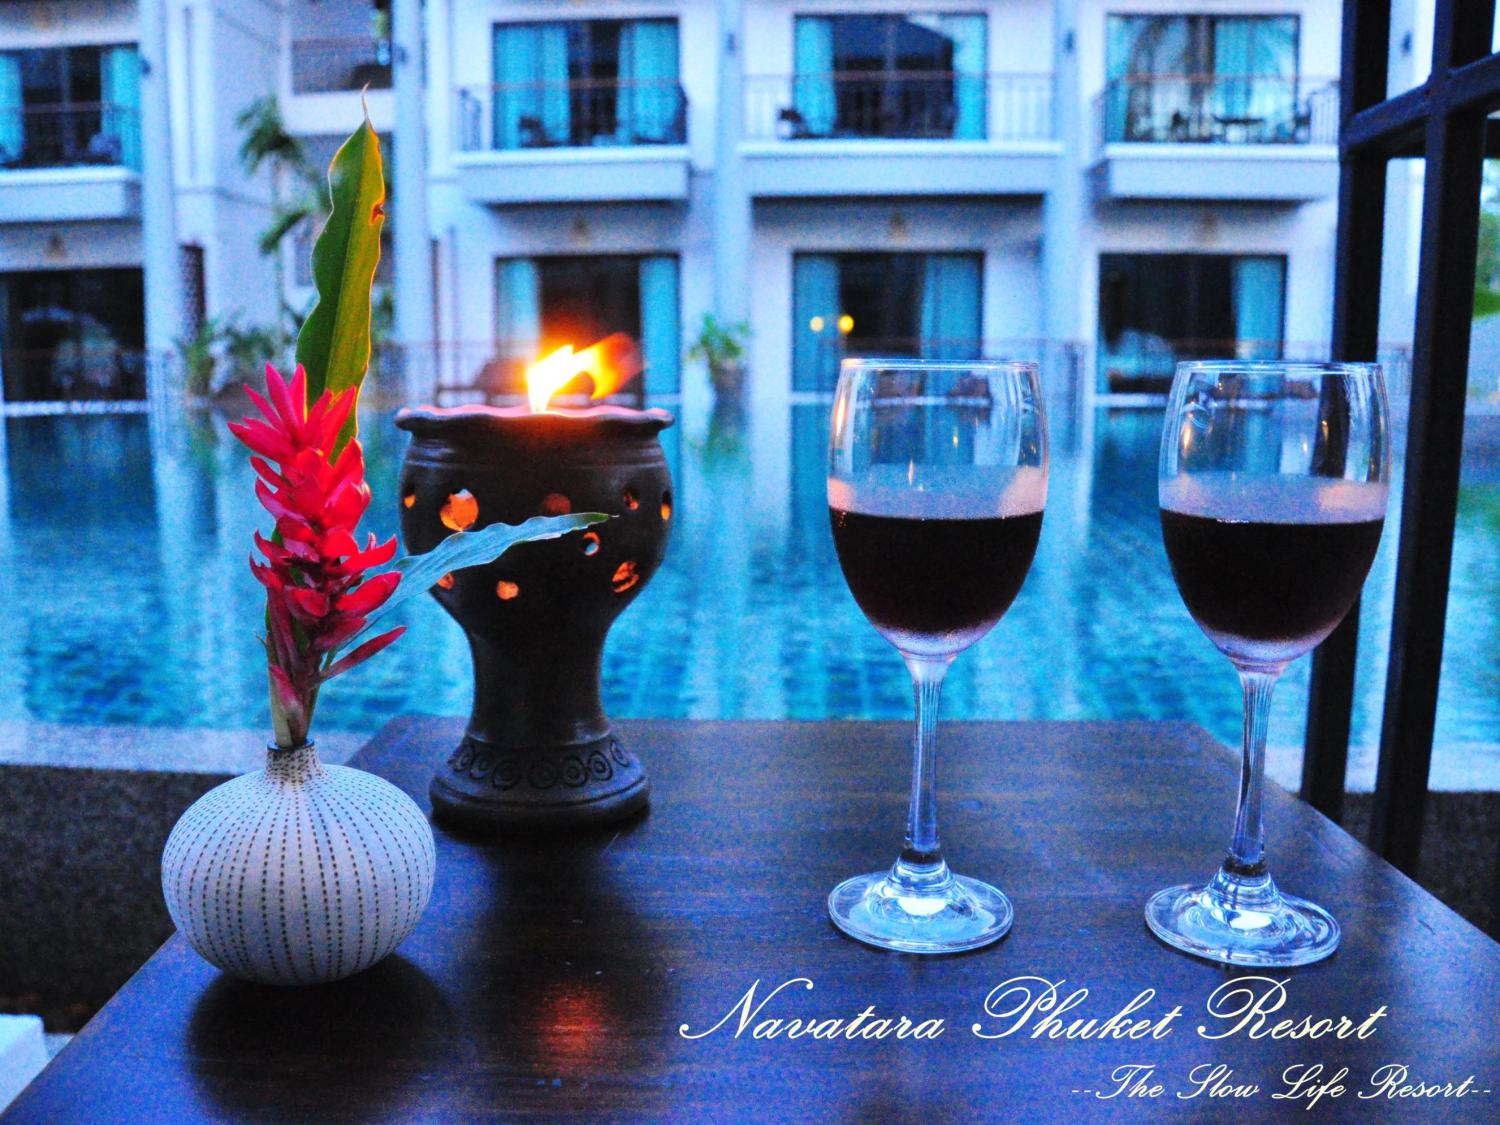 Navatara Phuket Resort - Image 4